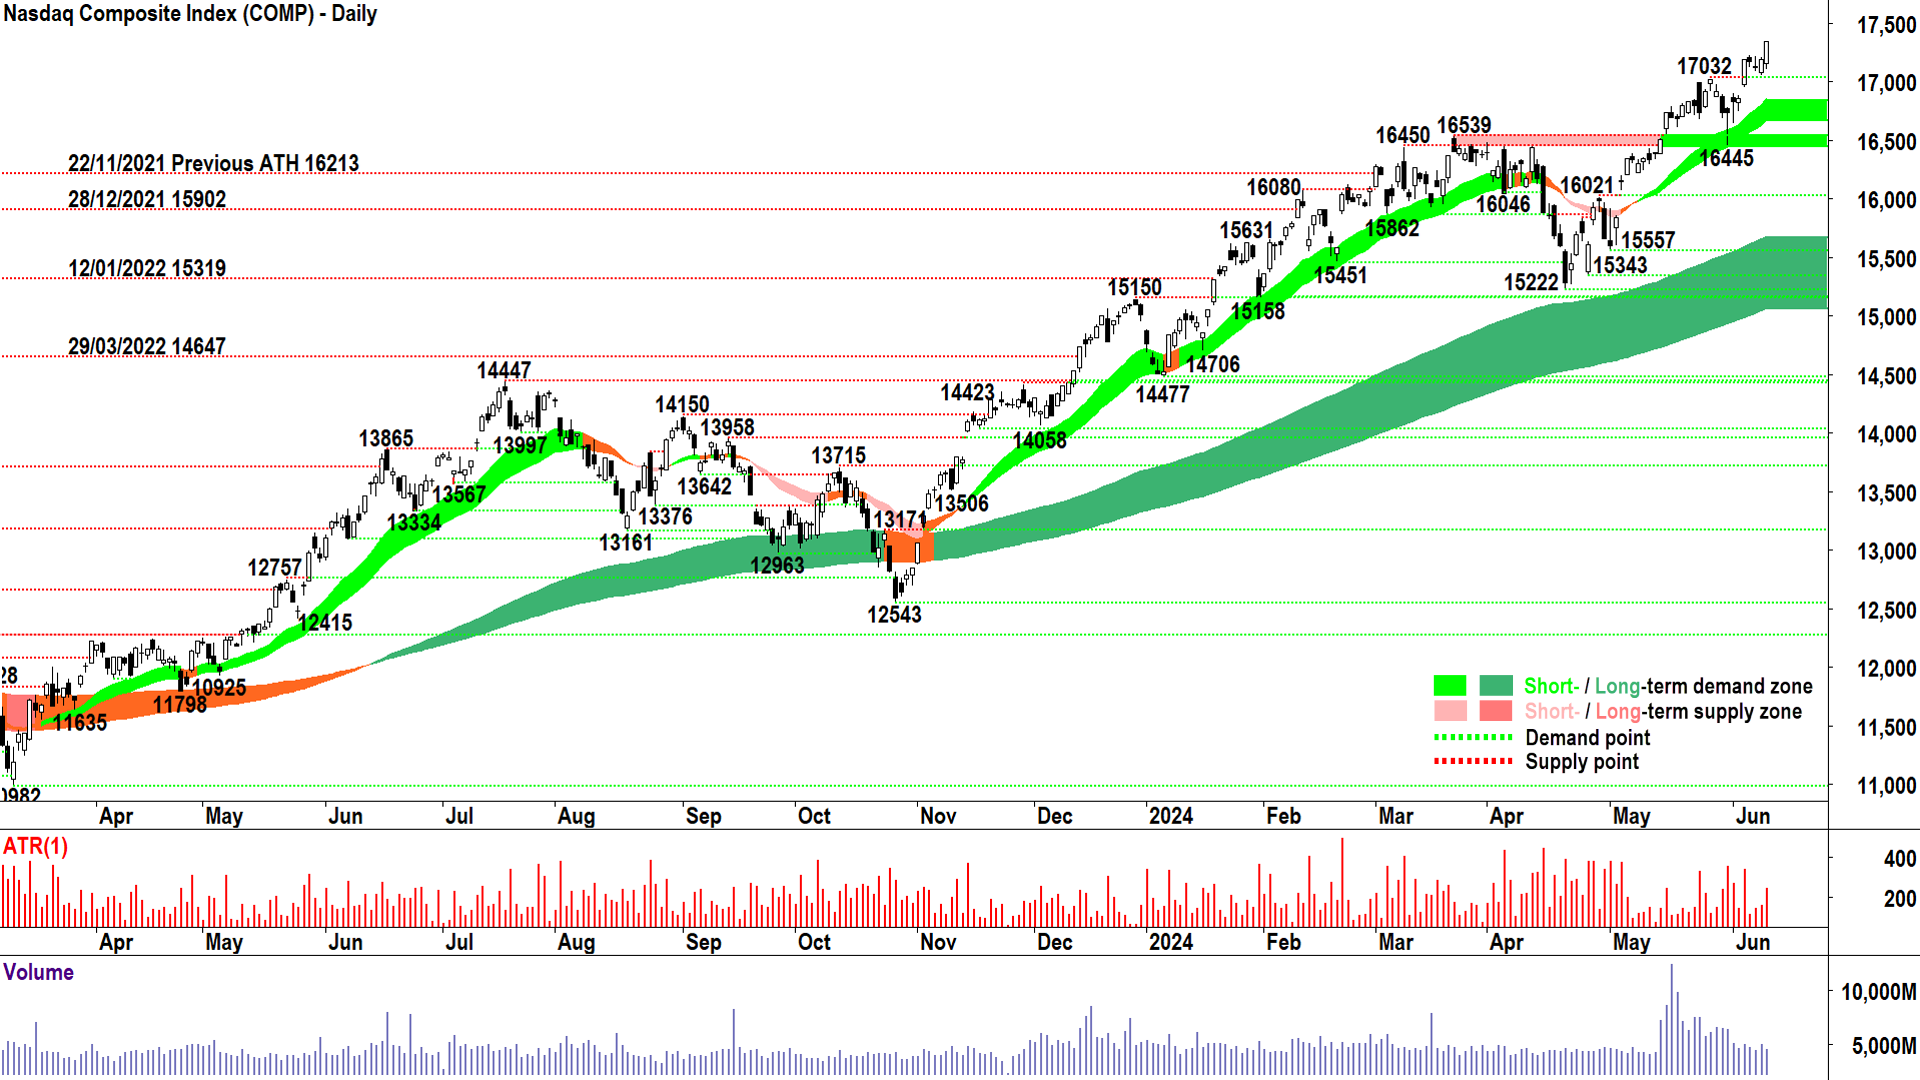 NASDAQ Composite Index chart 11 June 2024